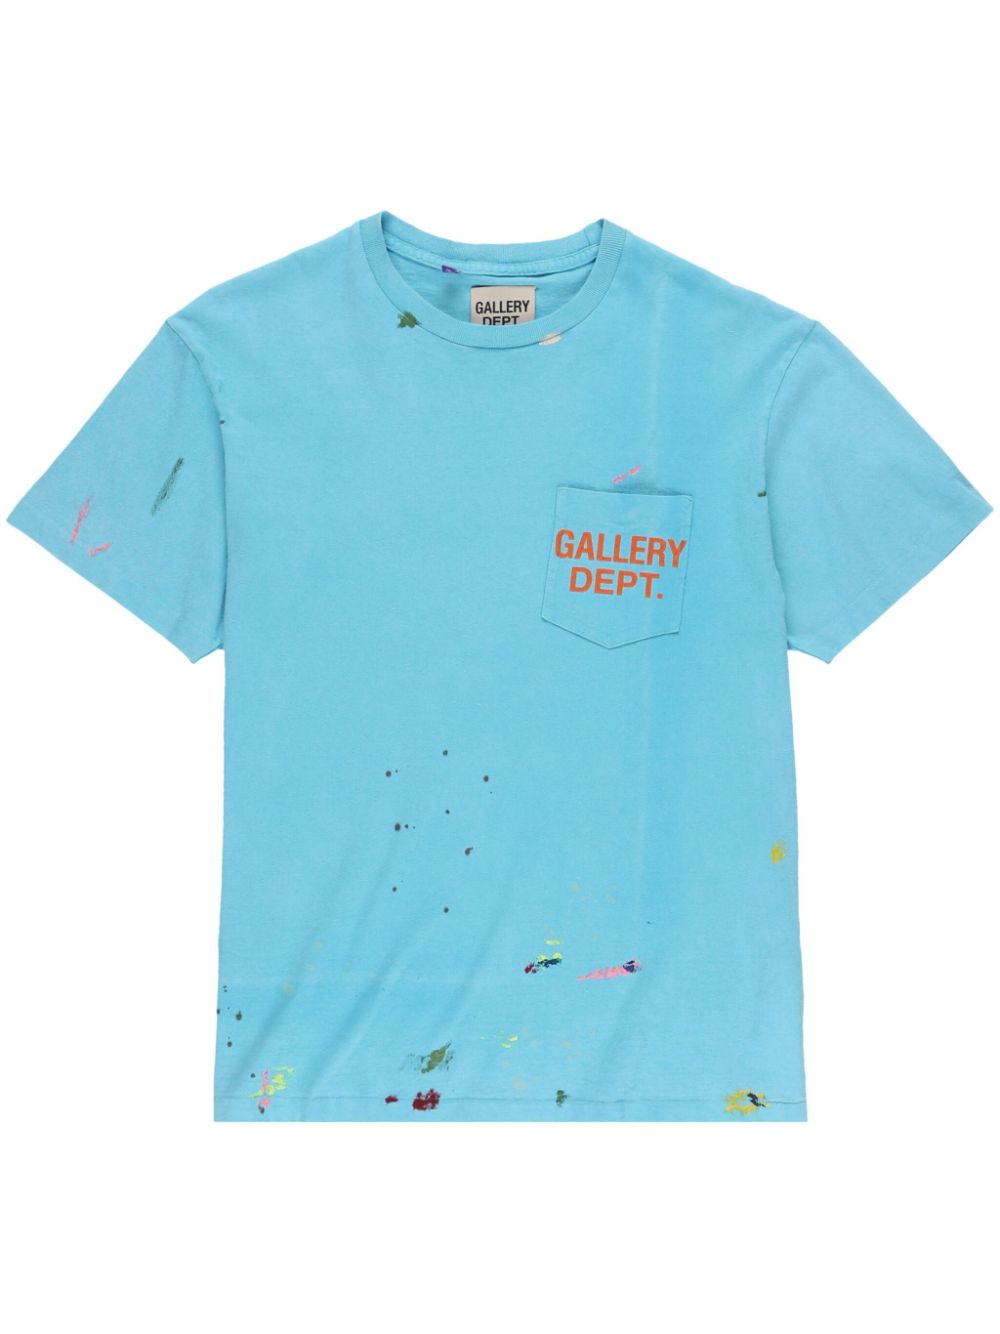 GALLERY DEPT. Vintage Logo Painted cotton T-shirt - Blau